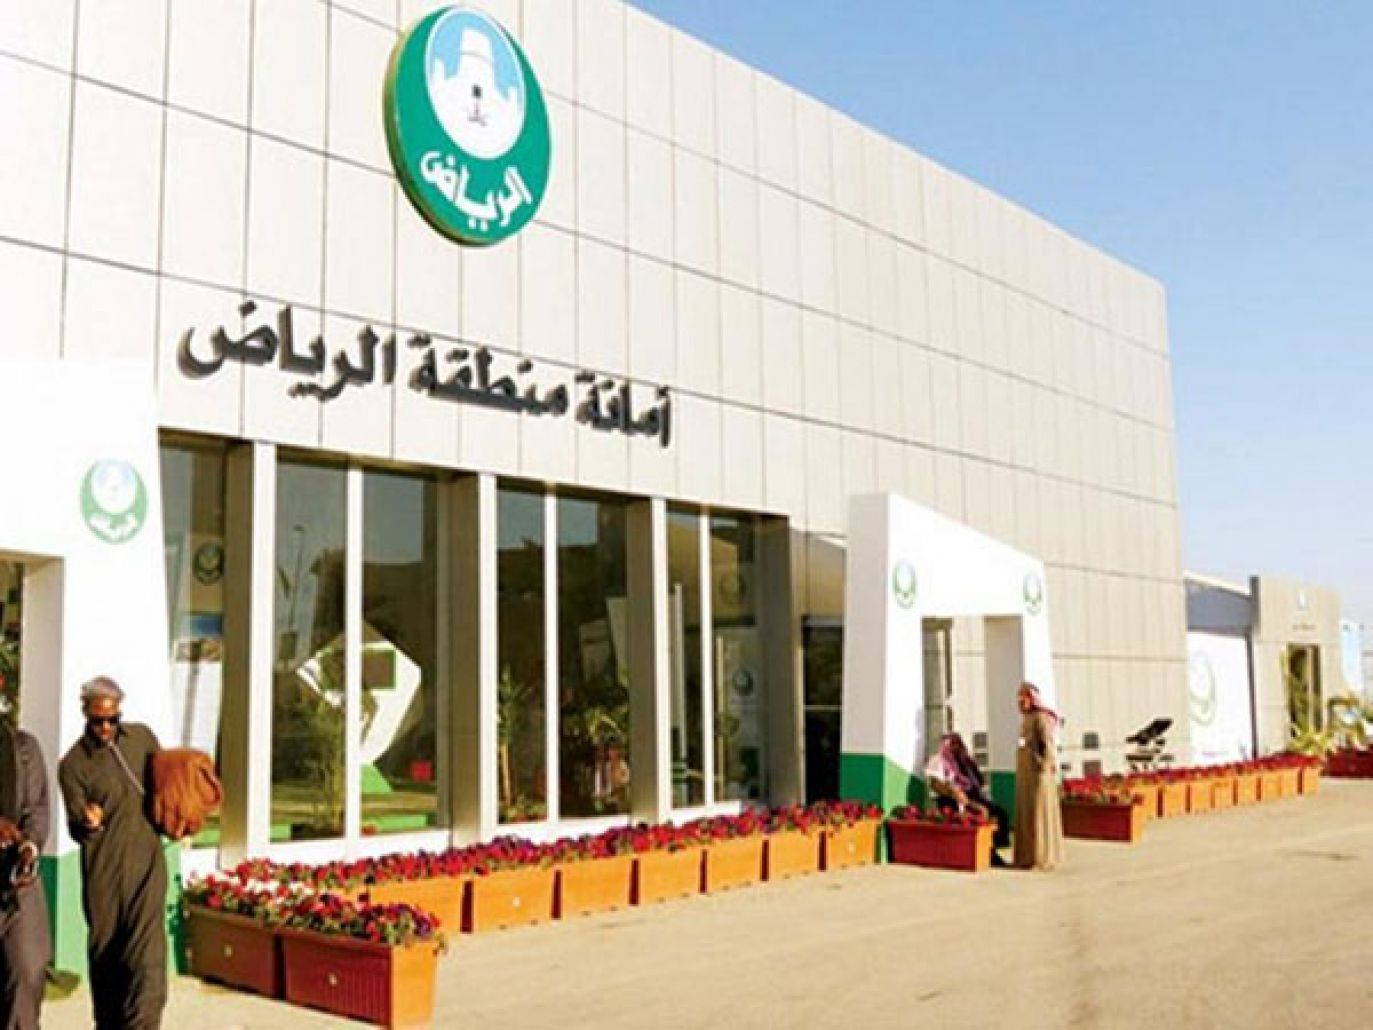 أمانة الرياض بعد التسمم الغذائي: إغلاق فروع المنشأة مصدر الحالات وإيقاف خدمات التوصيل